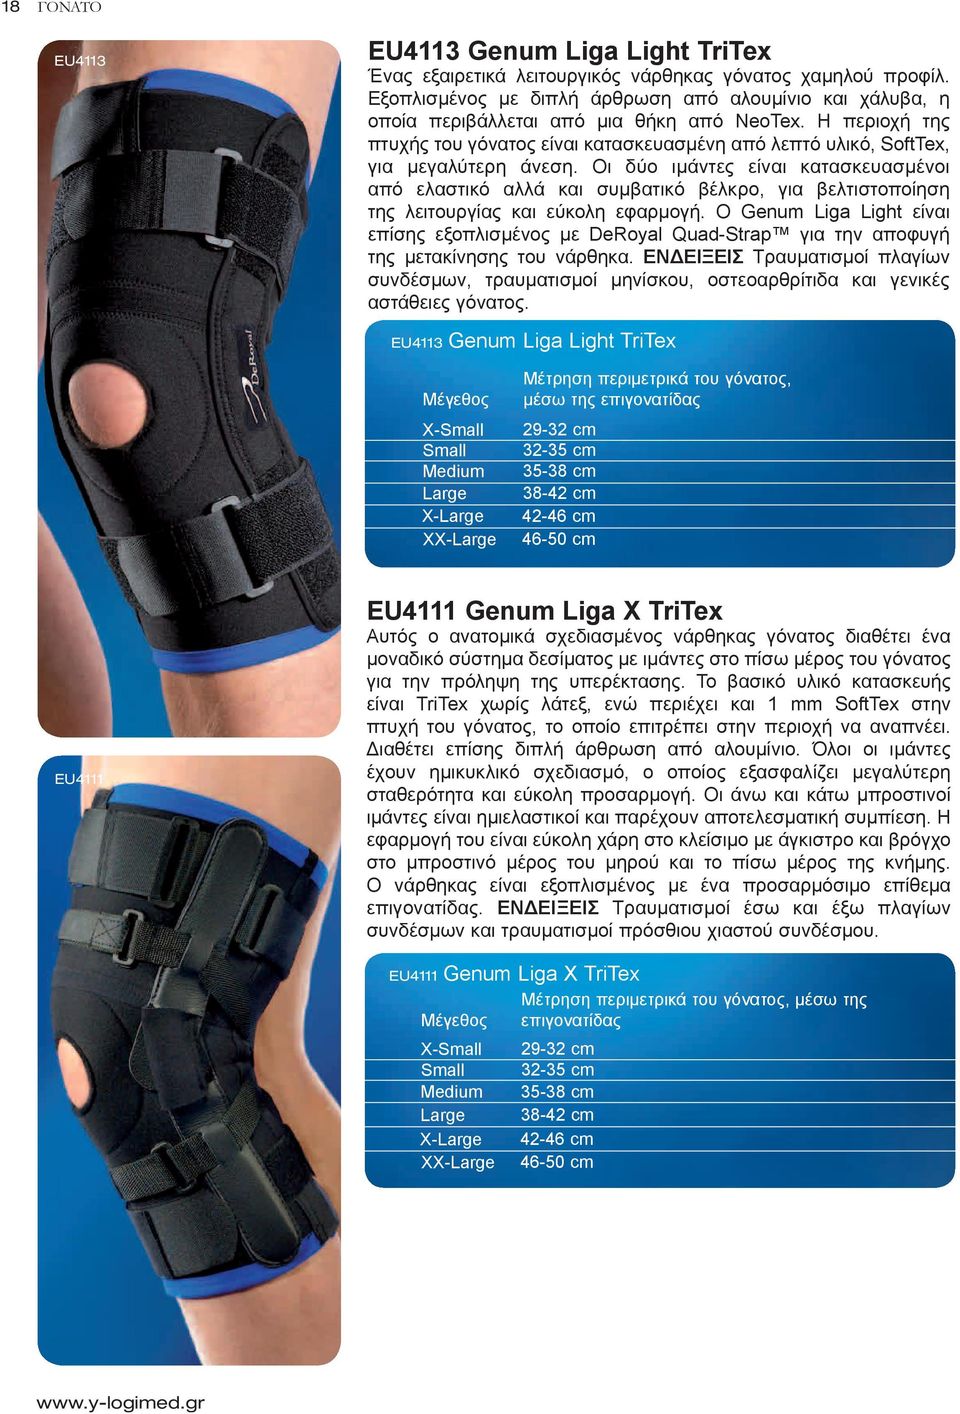 Η περιοχή της πτυχής του γόνατος είναι κατασκευασμένη από λεπτό υλικό, SoftTex, για μεγαλύτερη άνεση.